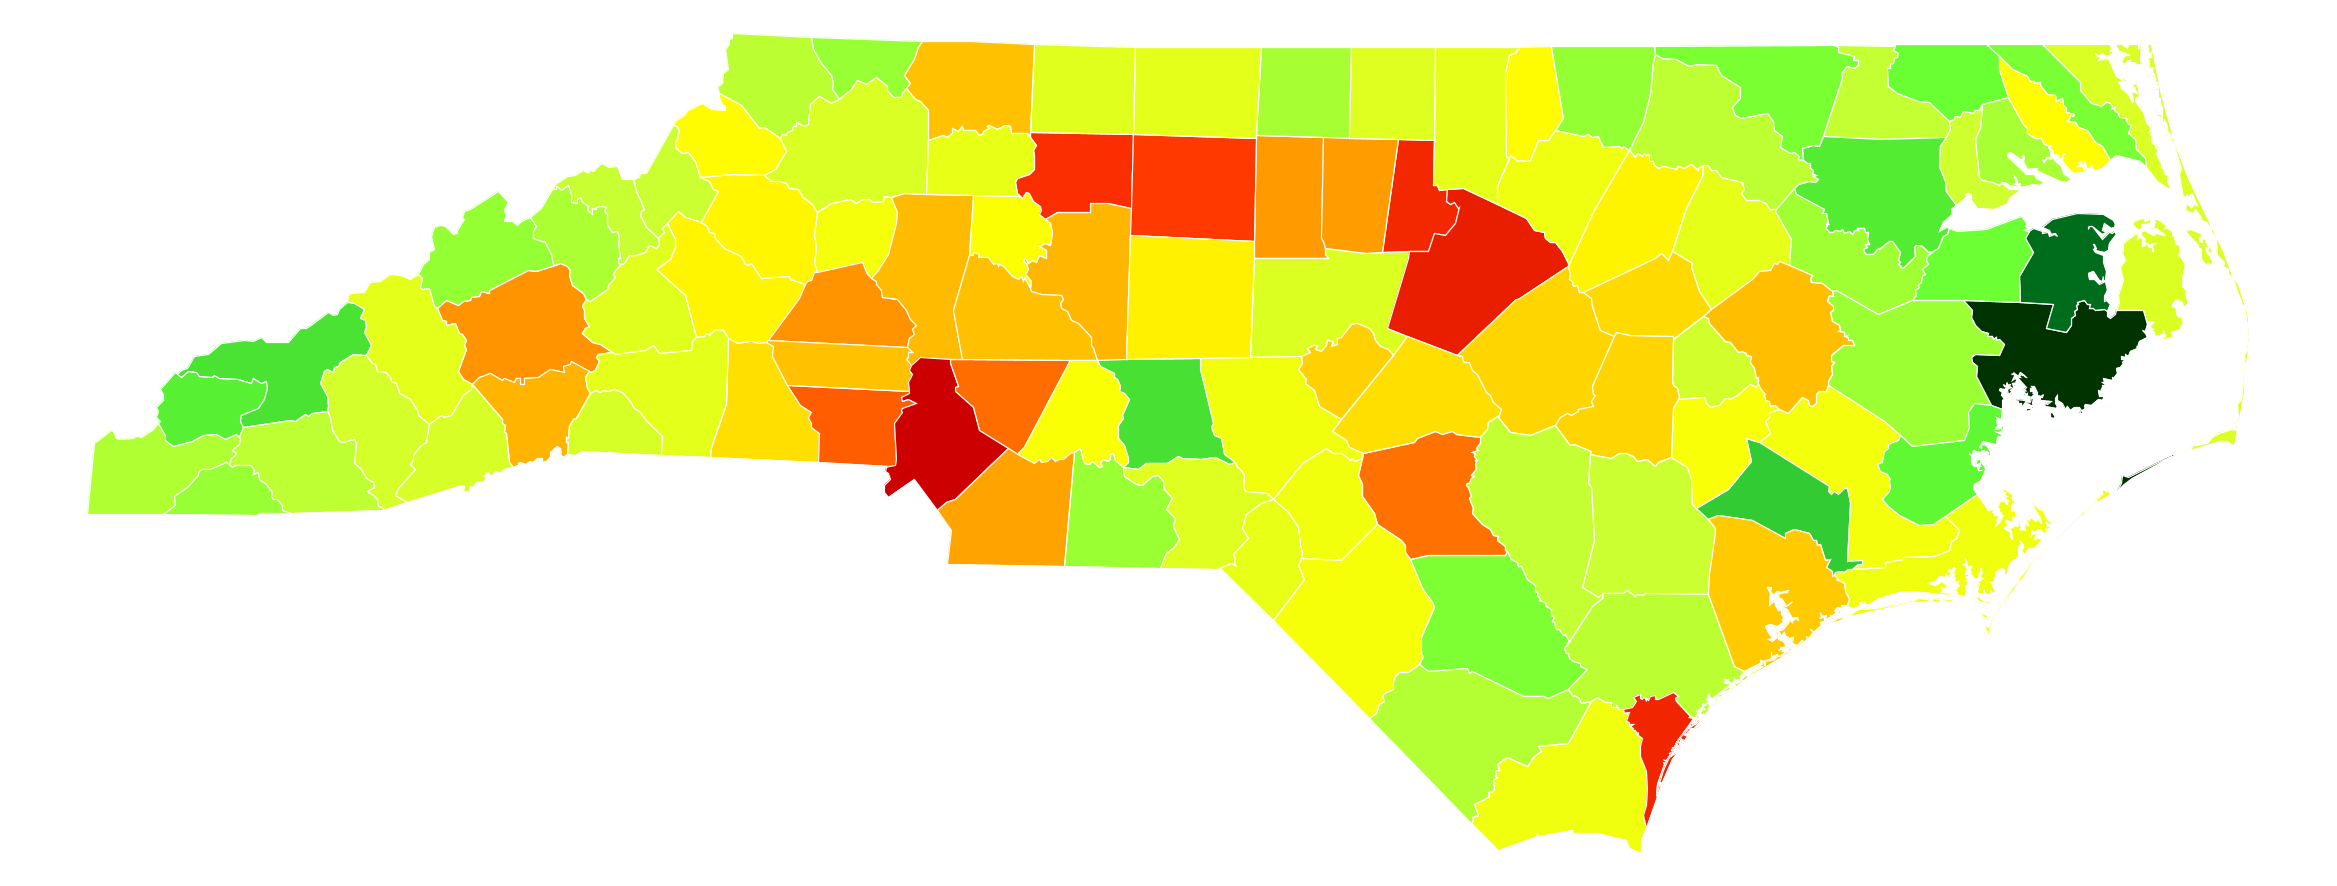 North Carolina Population Density